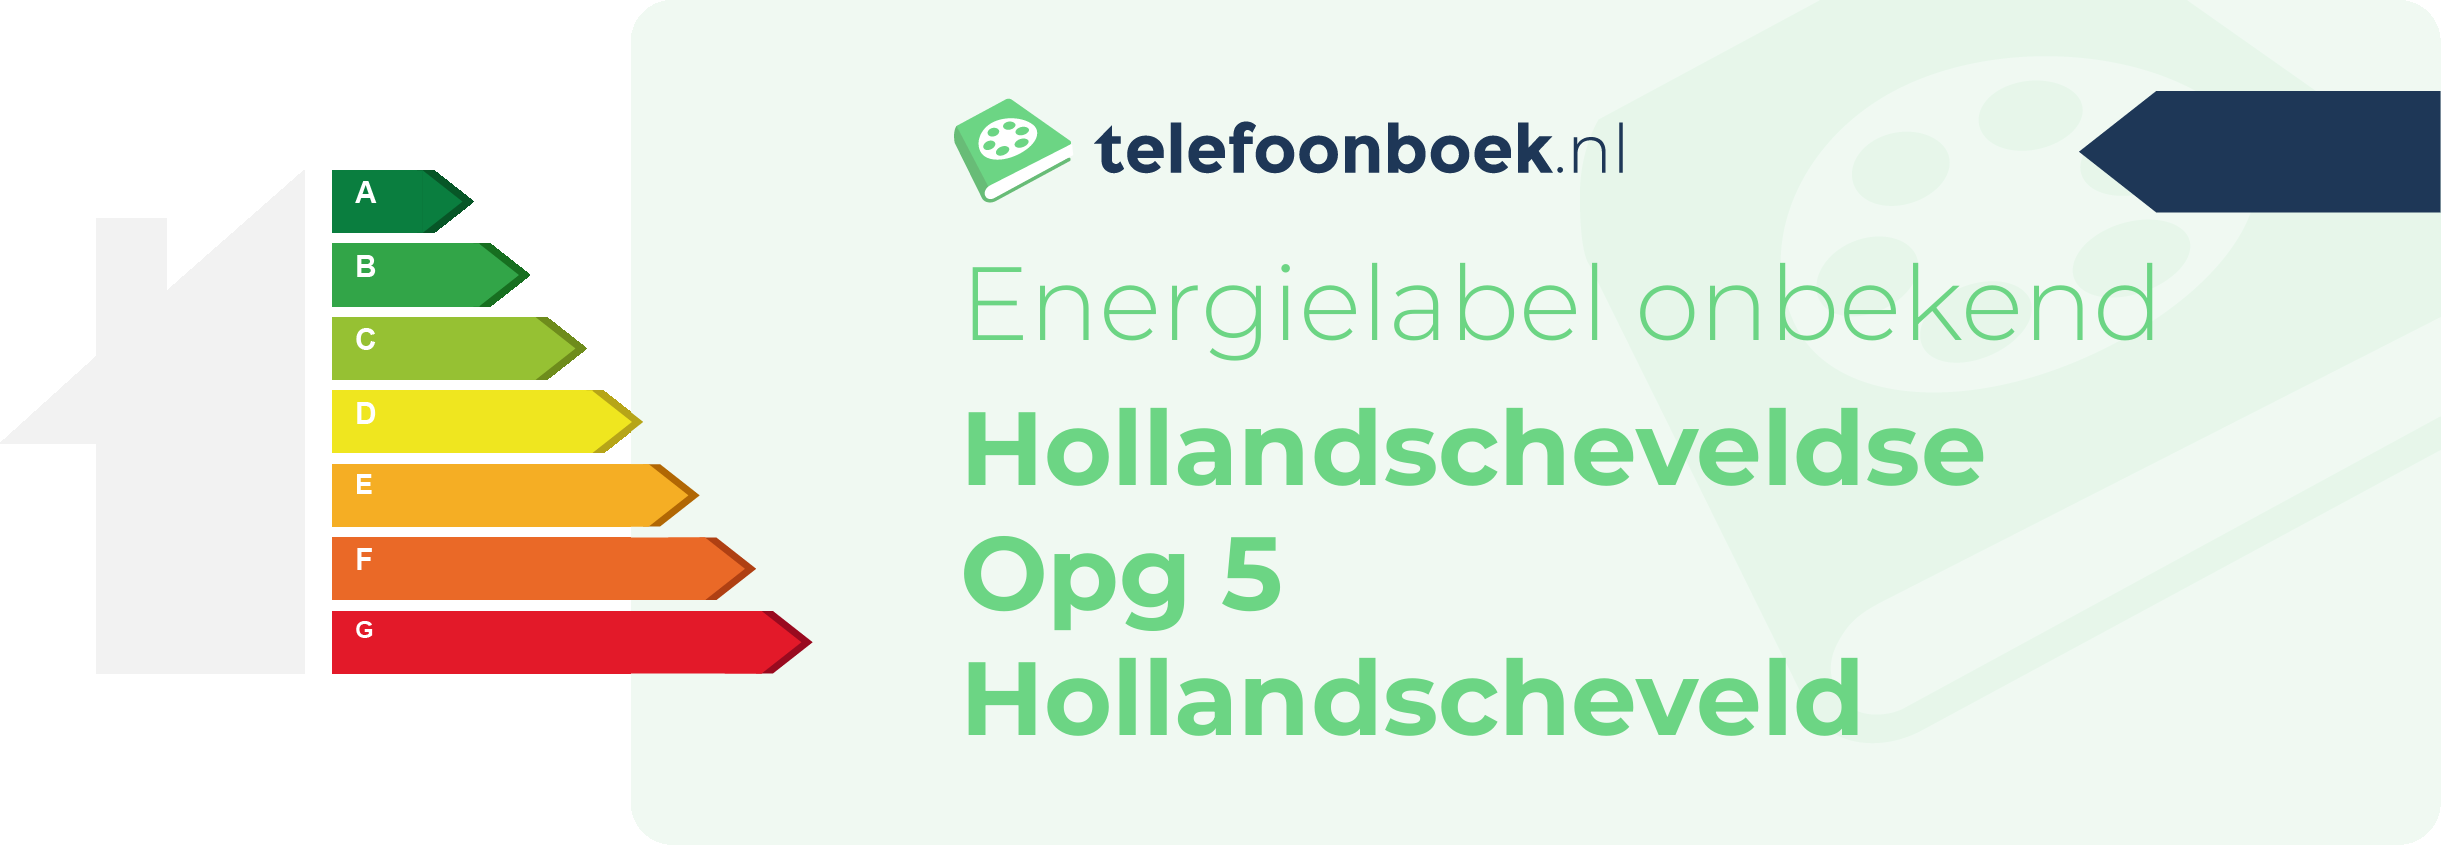 Energielabel Hollandscheveldse Opg 5 Hollandscheveld